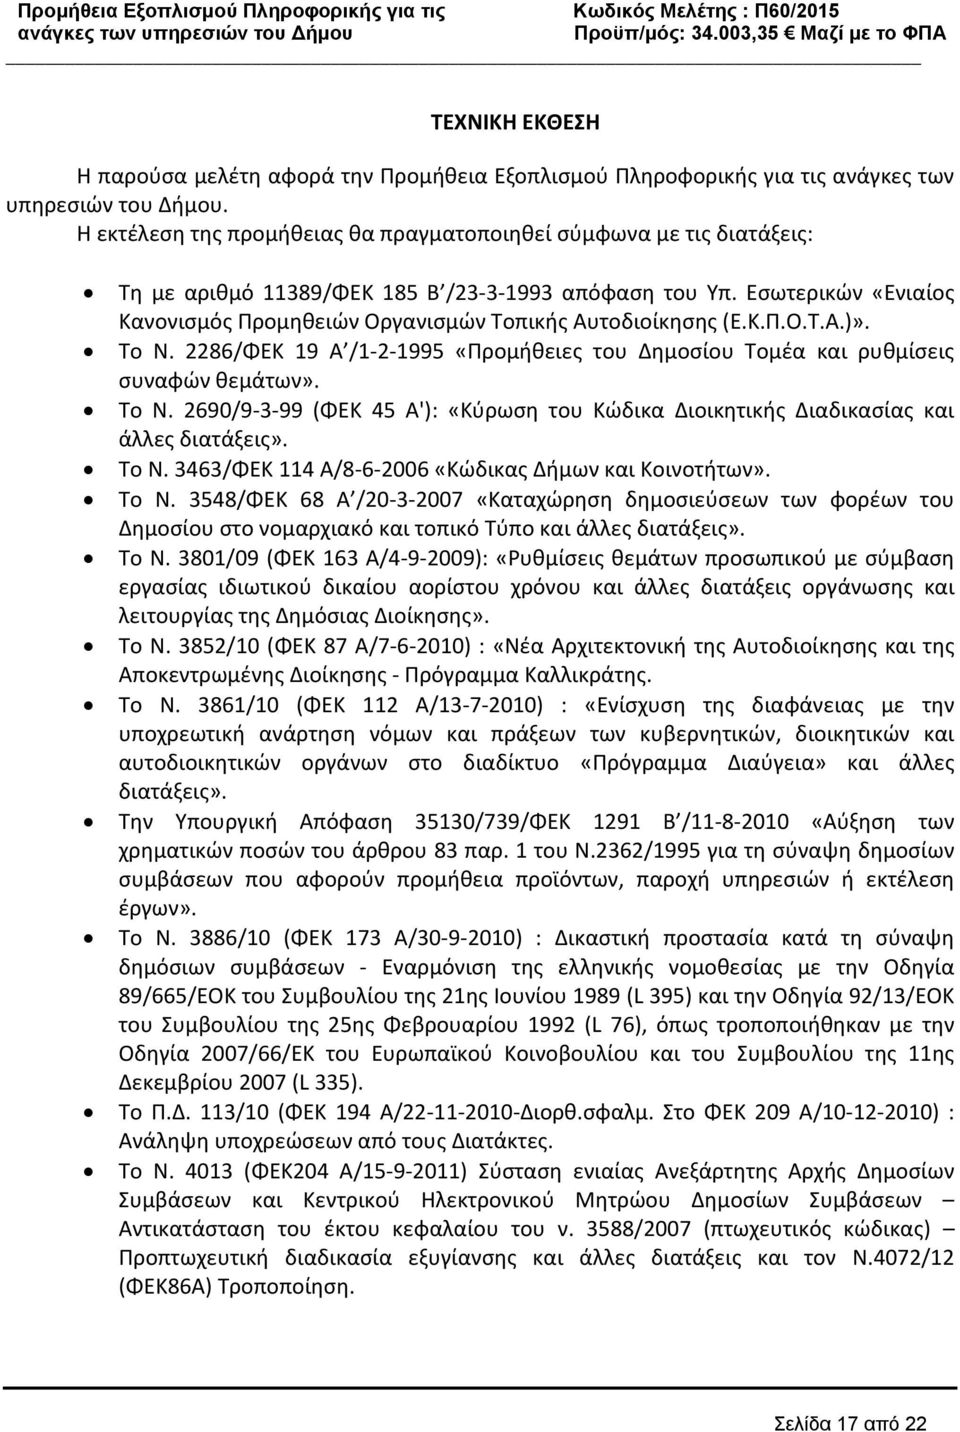 Εσωτερικών «Ενιαίος Κανονισμός Προμηθειών Οργανισμών Τοπικής Αυτοδιοίκησης (Ε.Κ.Π.Ο.Τ.Α.)». Το Ν. 2286/ΦΕΚ 19 Α /1 2 1995 «Προμήθειες του Δημοσίου Τομέα και ρυθμίσεις συναφών θεμάτων». Το Ν. 2690/9 3 99 (ΦΕΚ 45 Α'): «Κύρωση του Κώδικα Διοικητικής Διαδικασίας και άλλες διατάξεις».